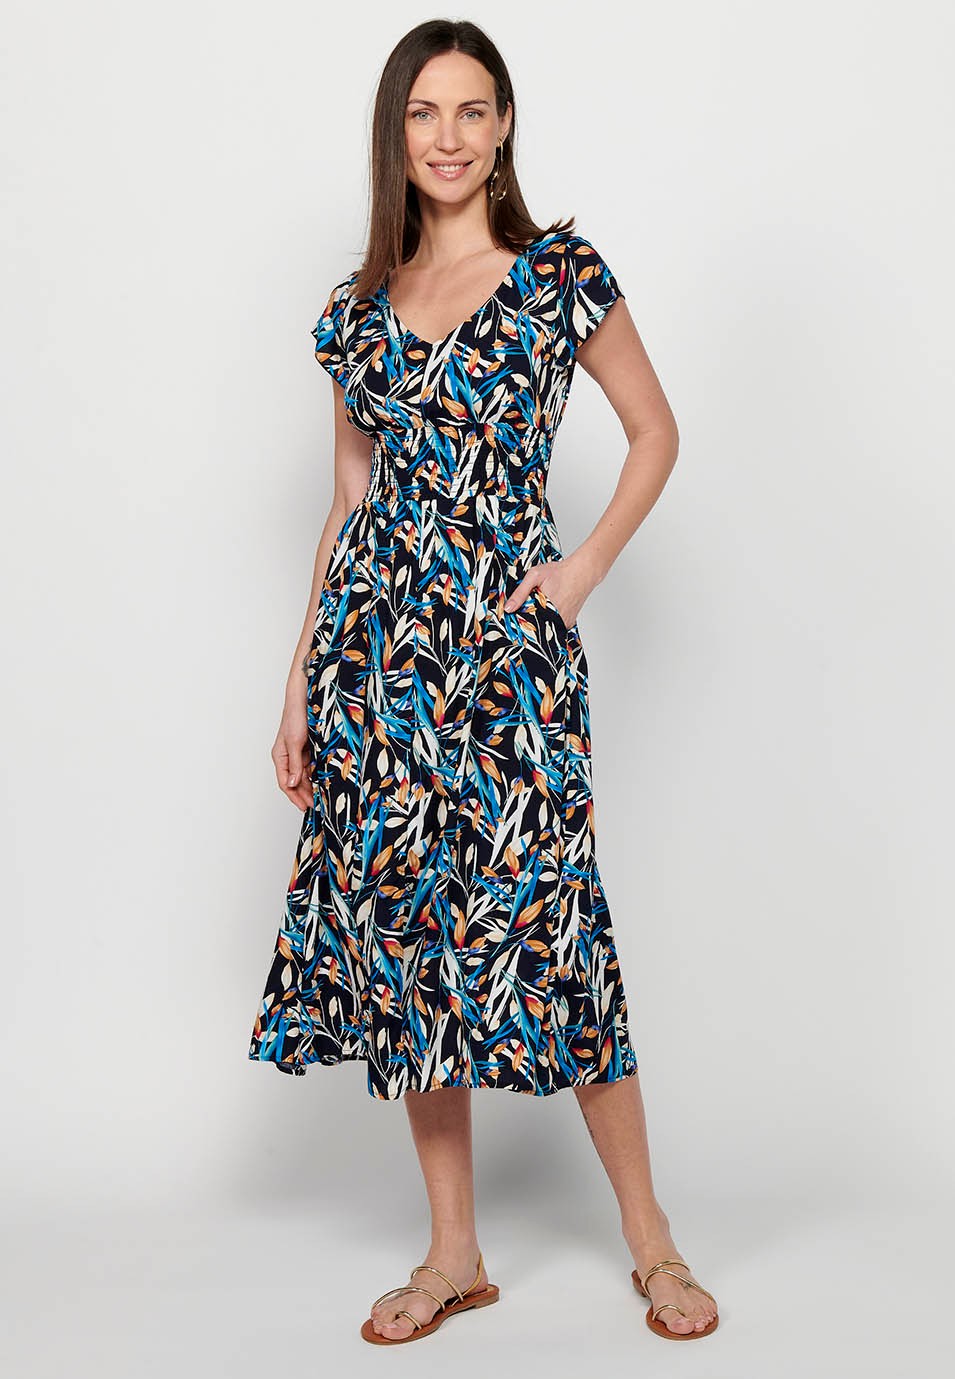 Damen-Kleid mit mehrfarbigem Blumendruck, V-Ausschnitt, kurzen Ärmeln und Schlitz vorne 7